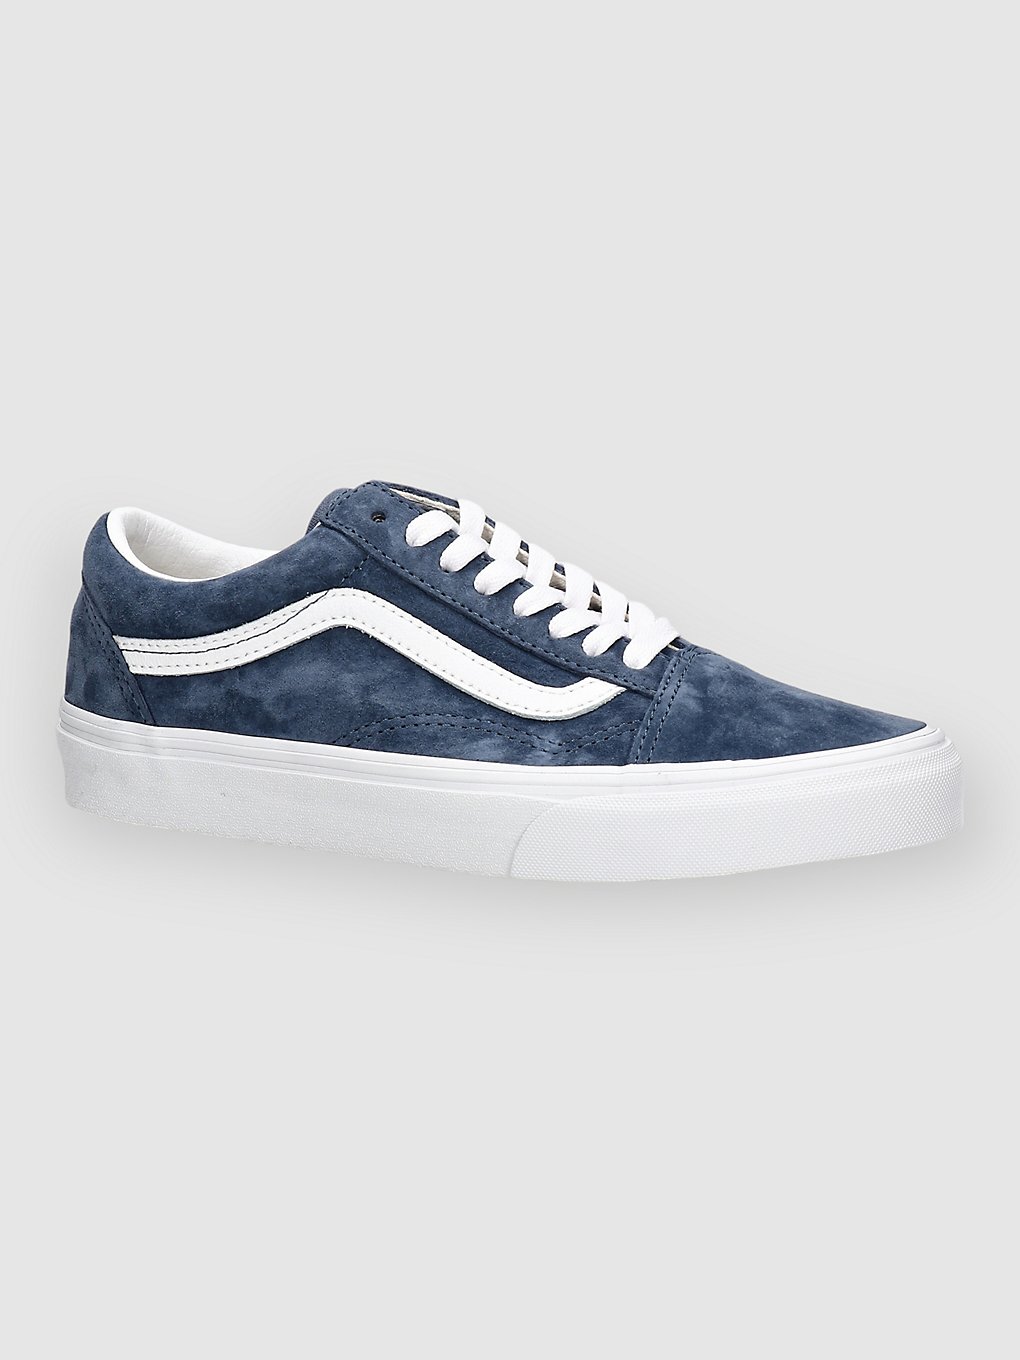 Vans Pig Suede Old Skool Sneakers blauw